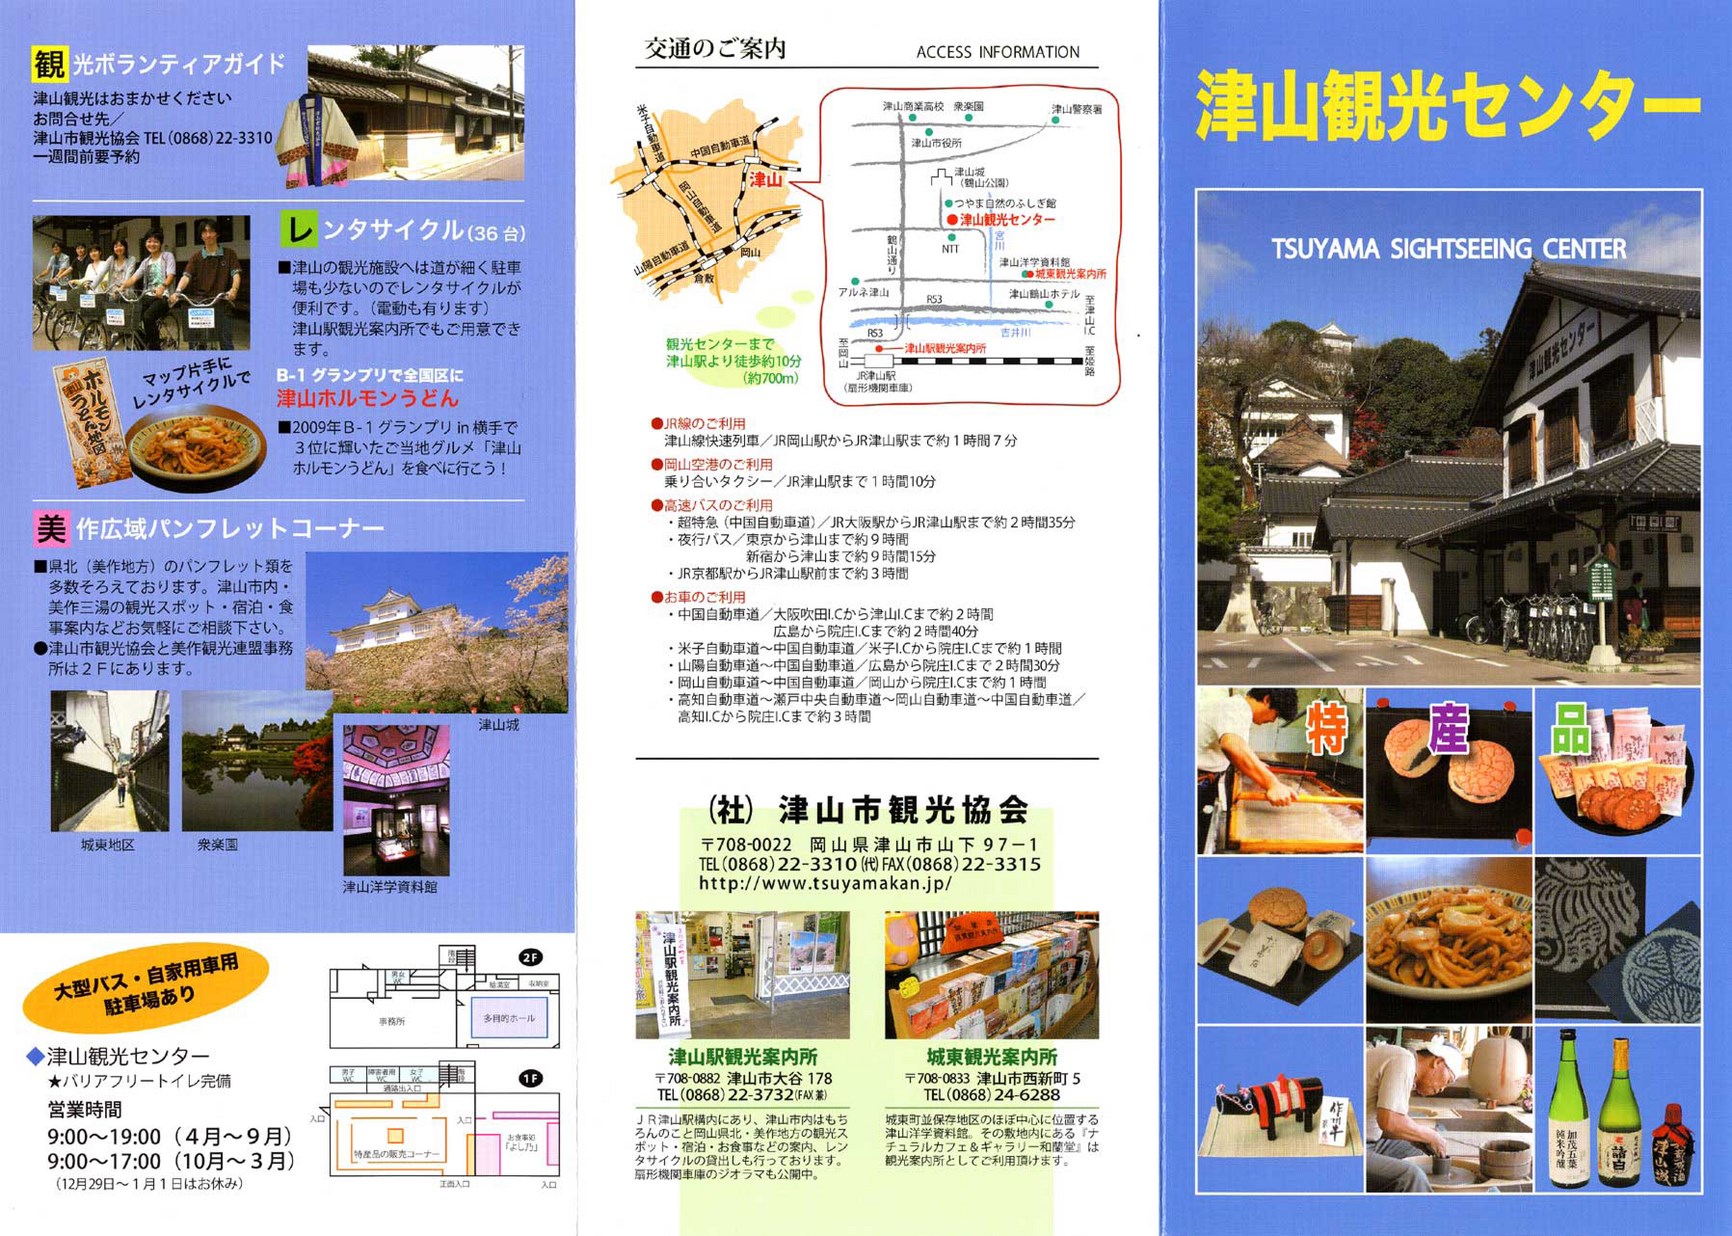 津山観光センターパンフレット オカヤマイーブックス Okayama Ebooks